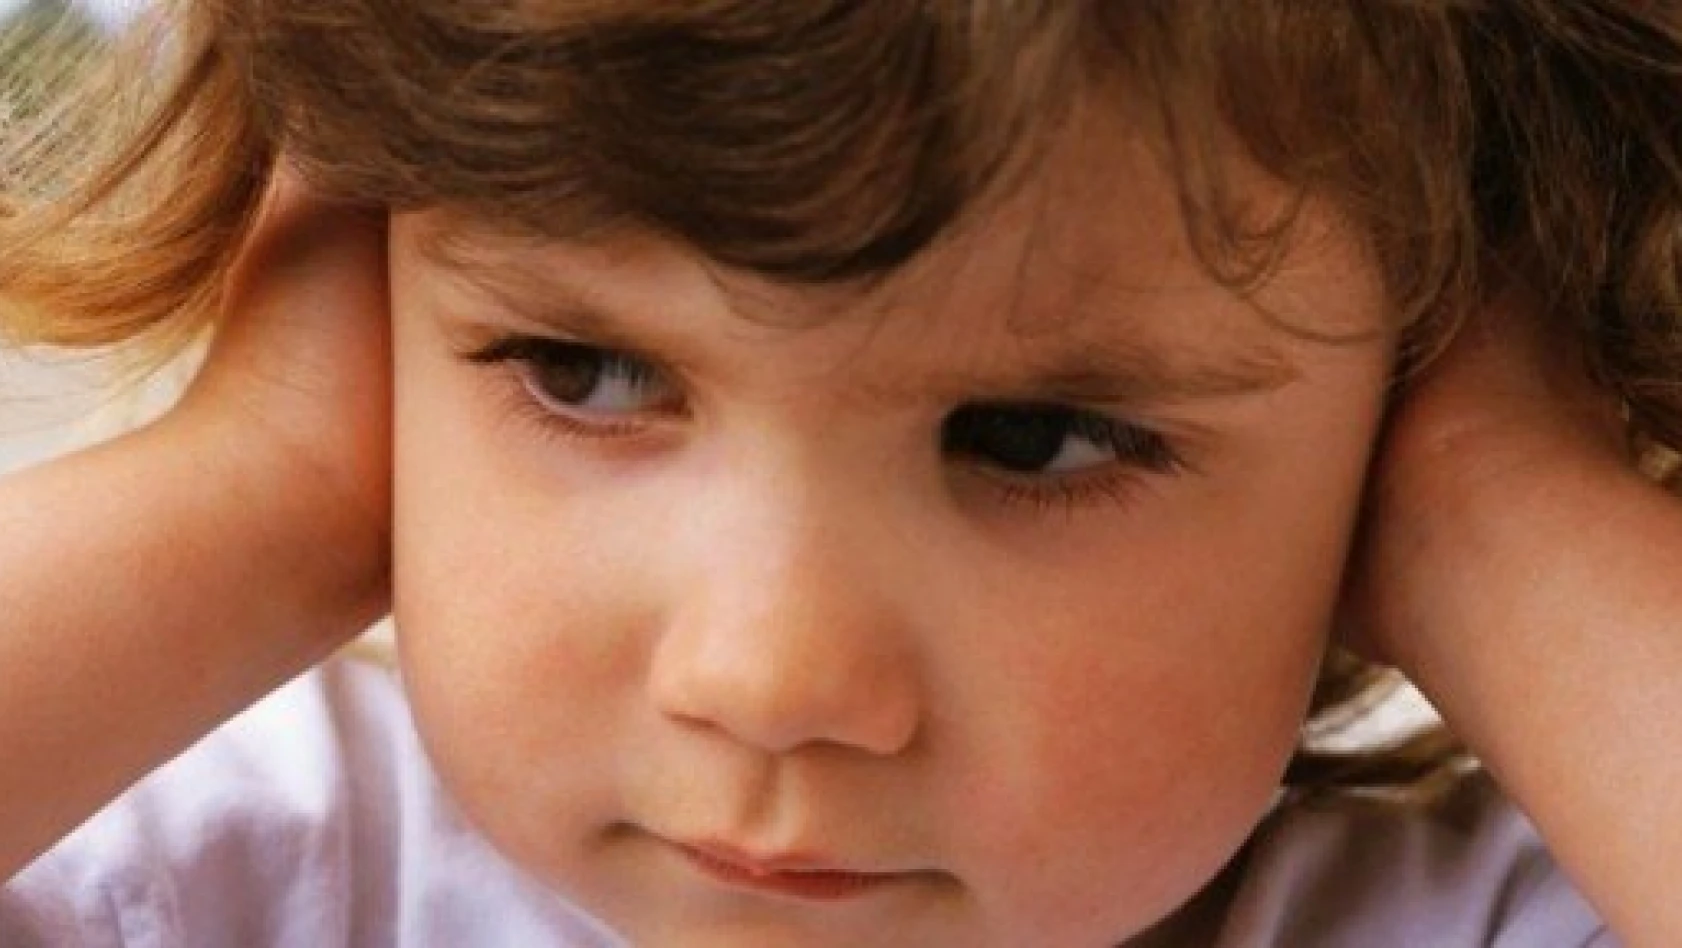 Çocuklarda sabit bakış epilepsi belirtisi olabilir